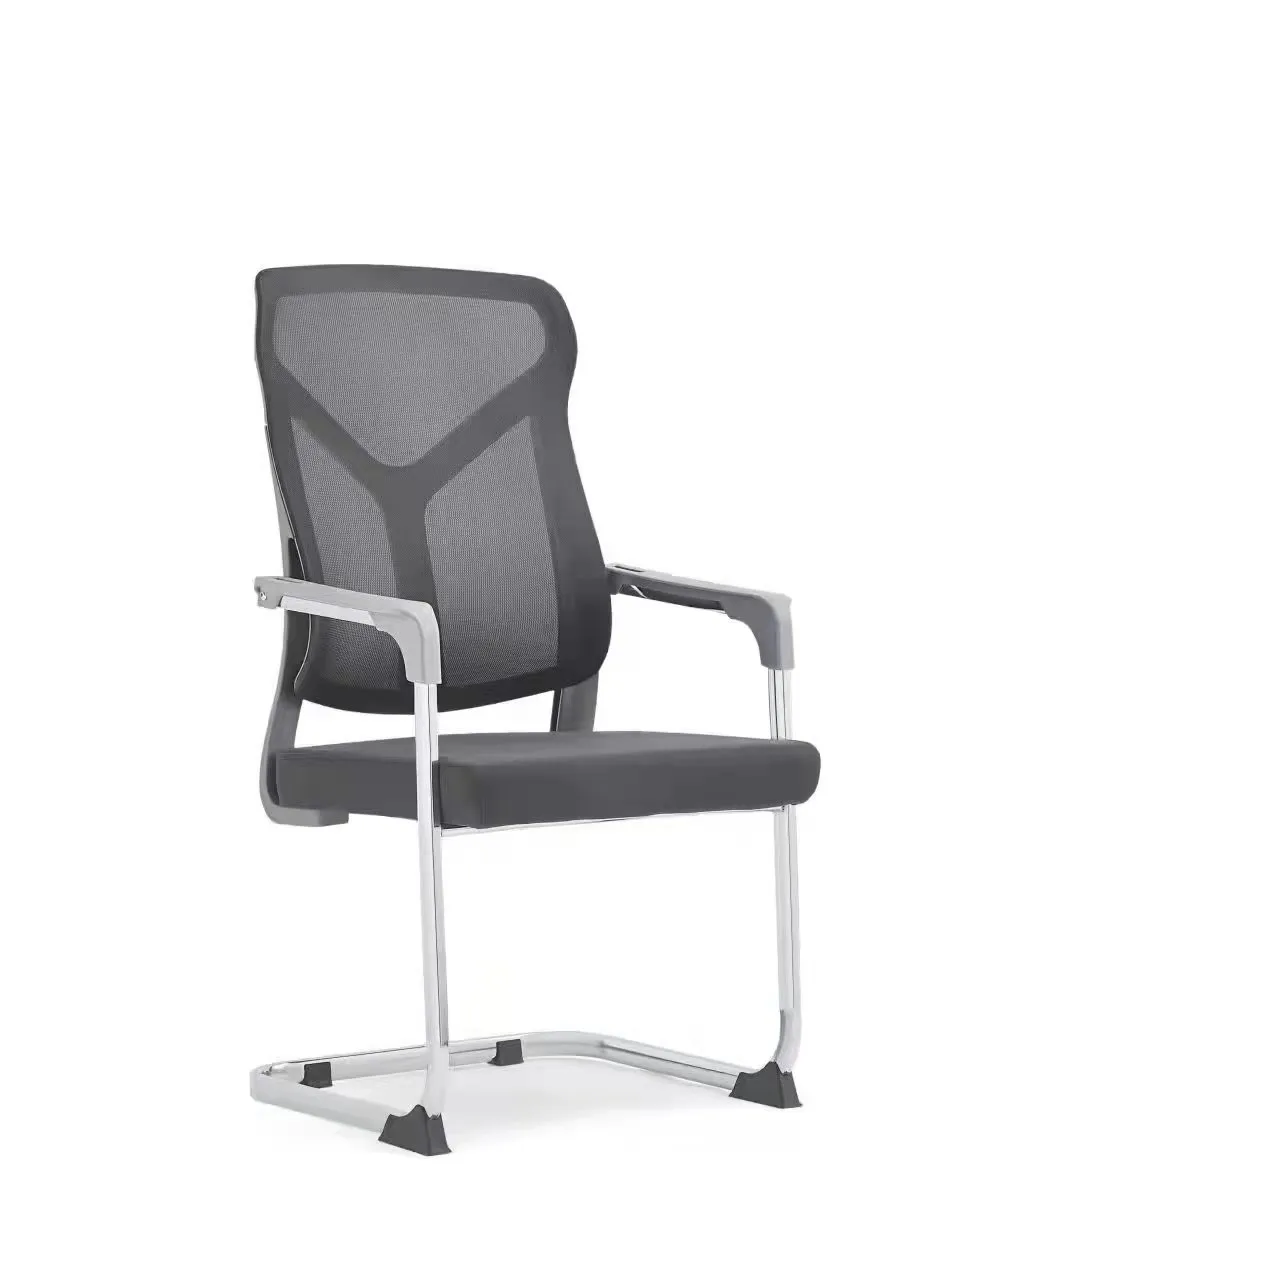 Struttura ergonomica mobili per ufficio popolari cuscino in rete traspirante sedia da ufficio per allenamento con gambe ad arco